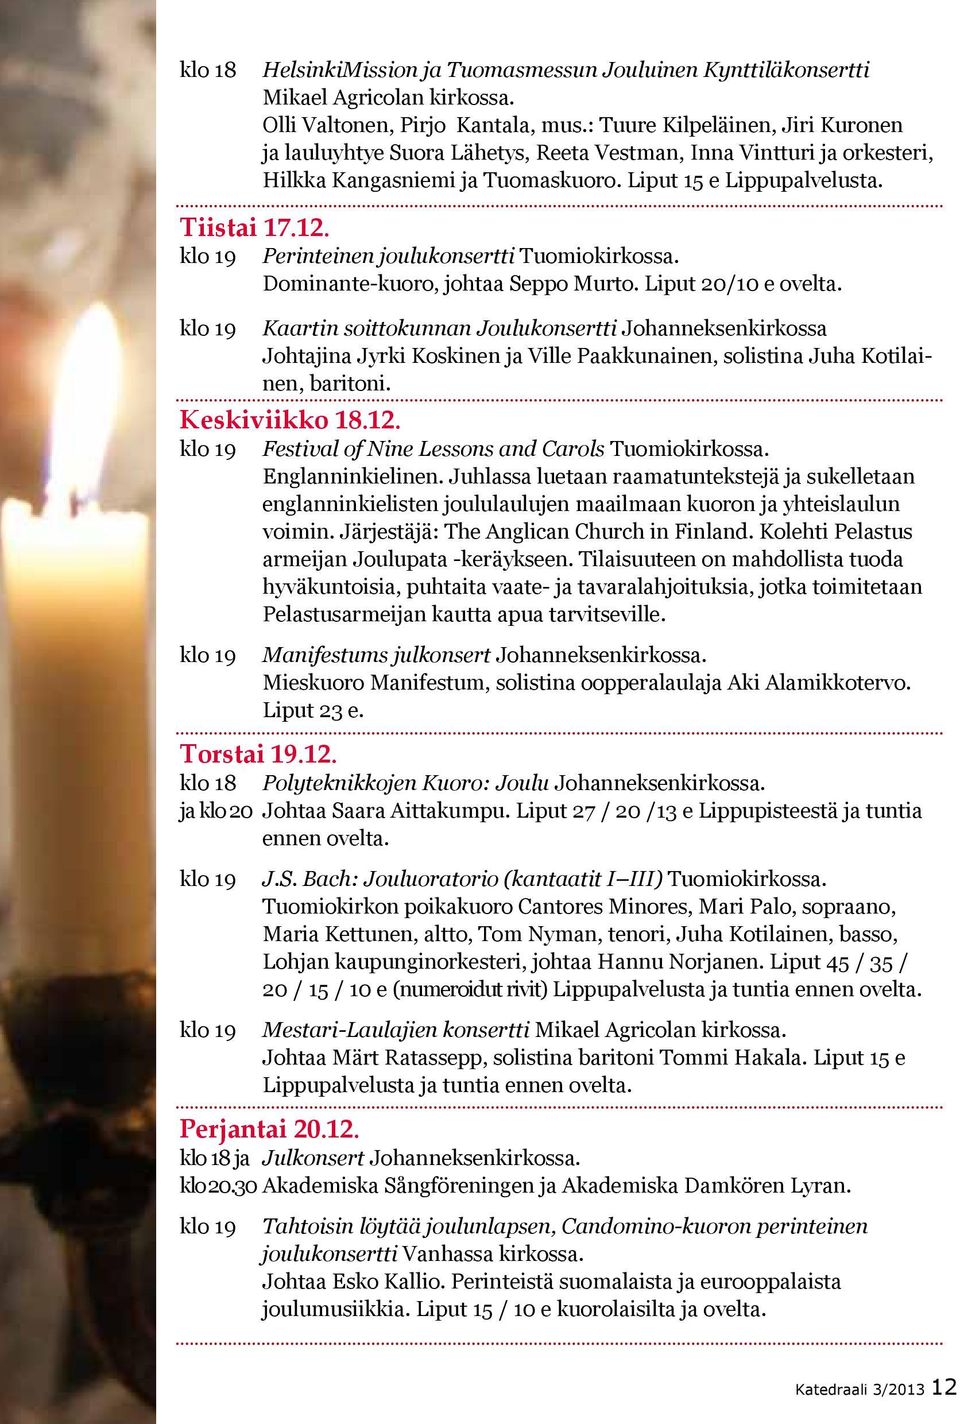 Perinteinen joulukonsertti Tuomiokirkossa. Dominante-kuoro, johtaa Seppo Murto. Liput 20/10 e ovelta.